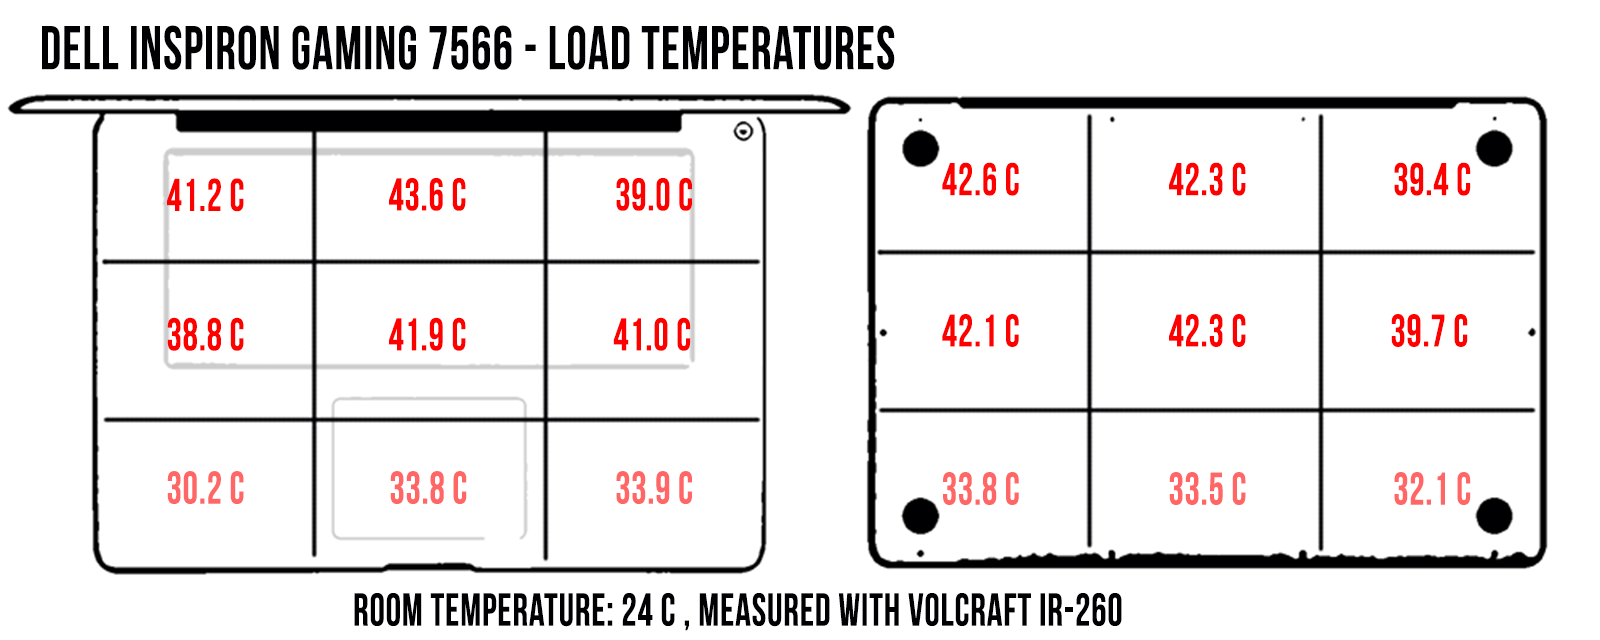 temperatures load dell7566